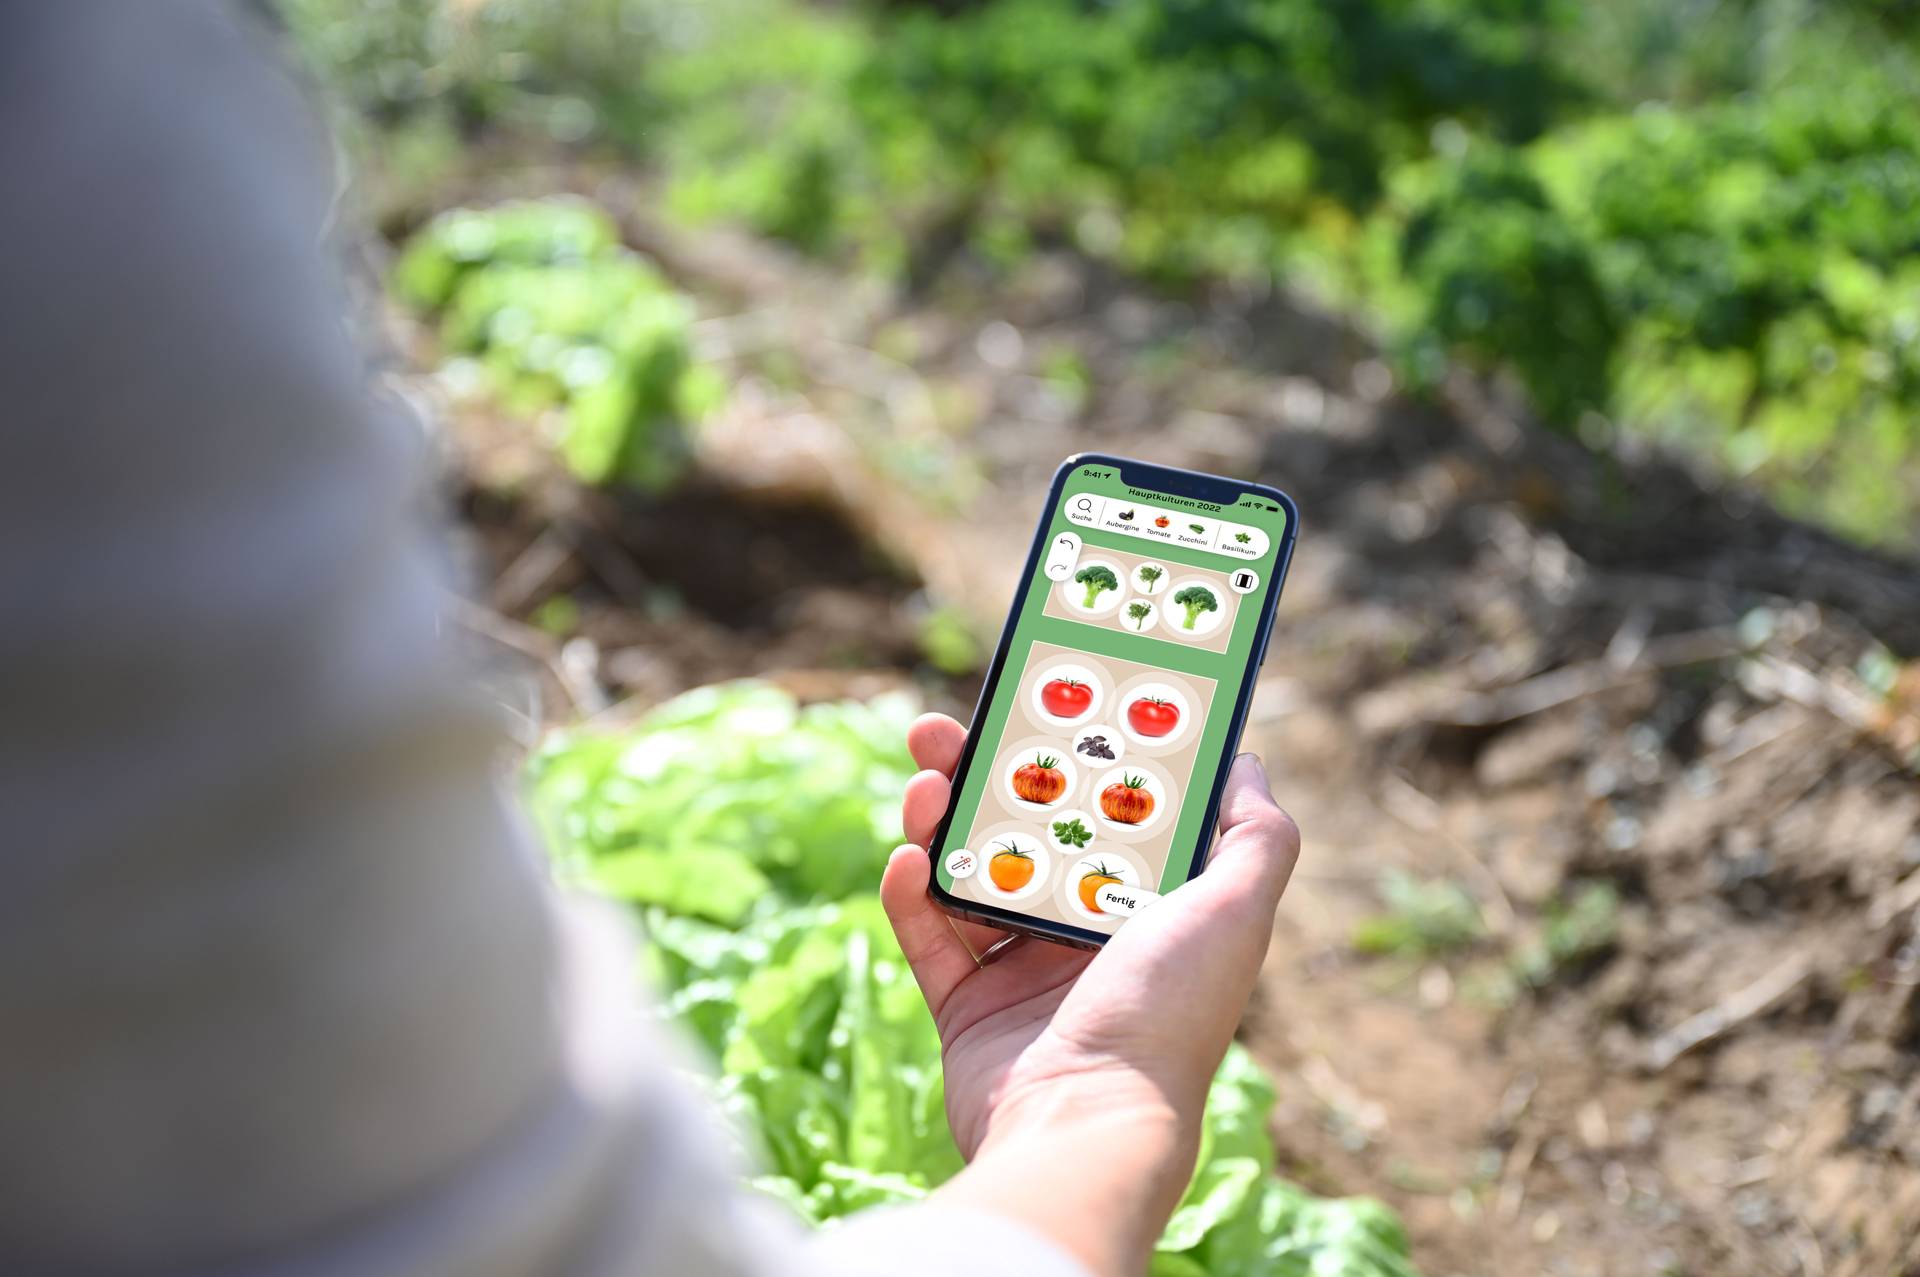 fryd smartphone app in mixed culture vegetable garden